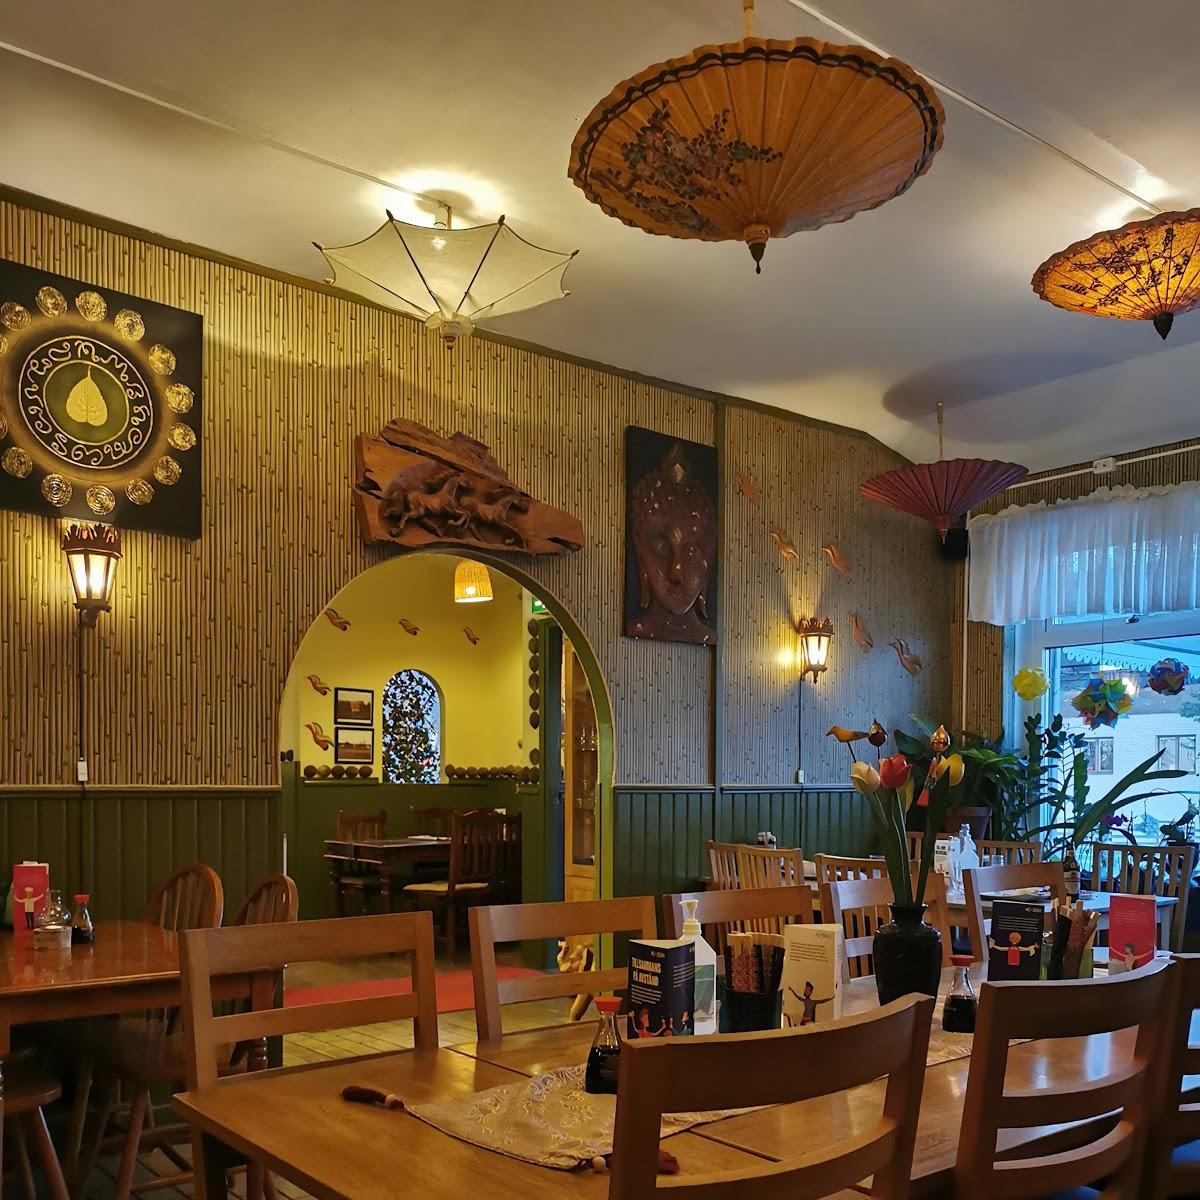 Restaurant "Kanjanas Thairestaurant & catering" in Rieseby